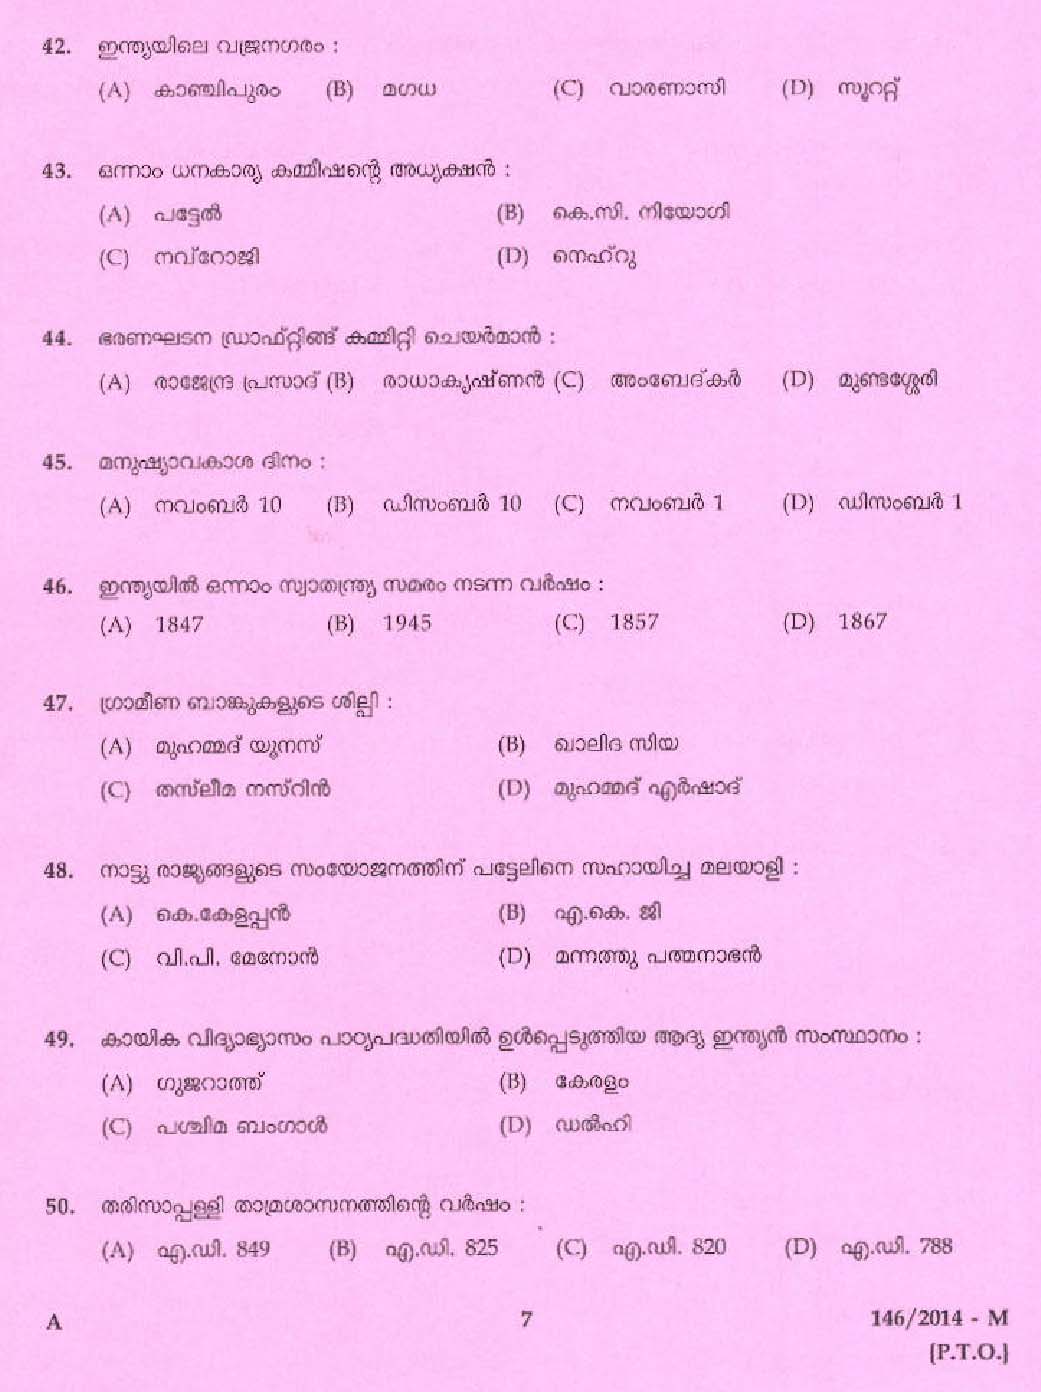 Kerala PSC Driver Grade II Exam 2014 Question Paper Code 1462014 M 5